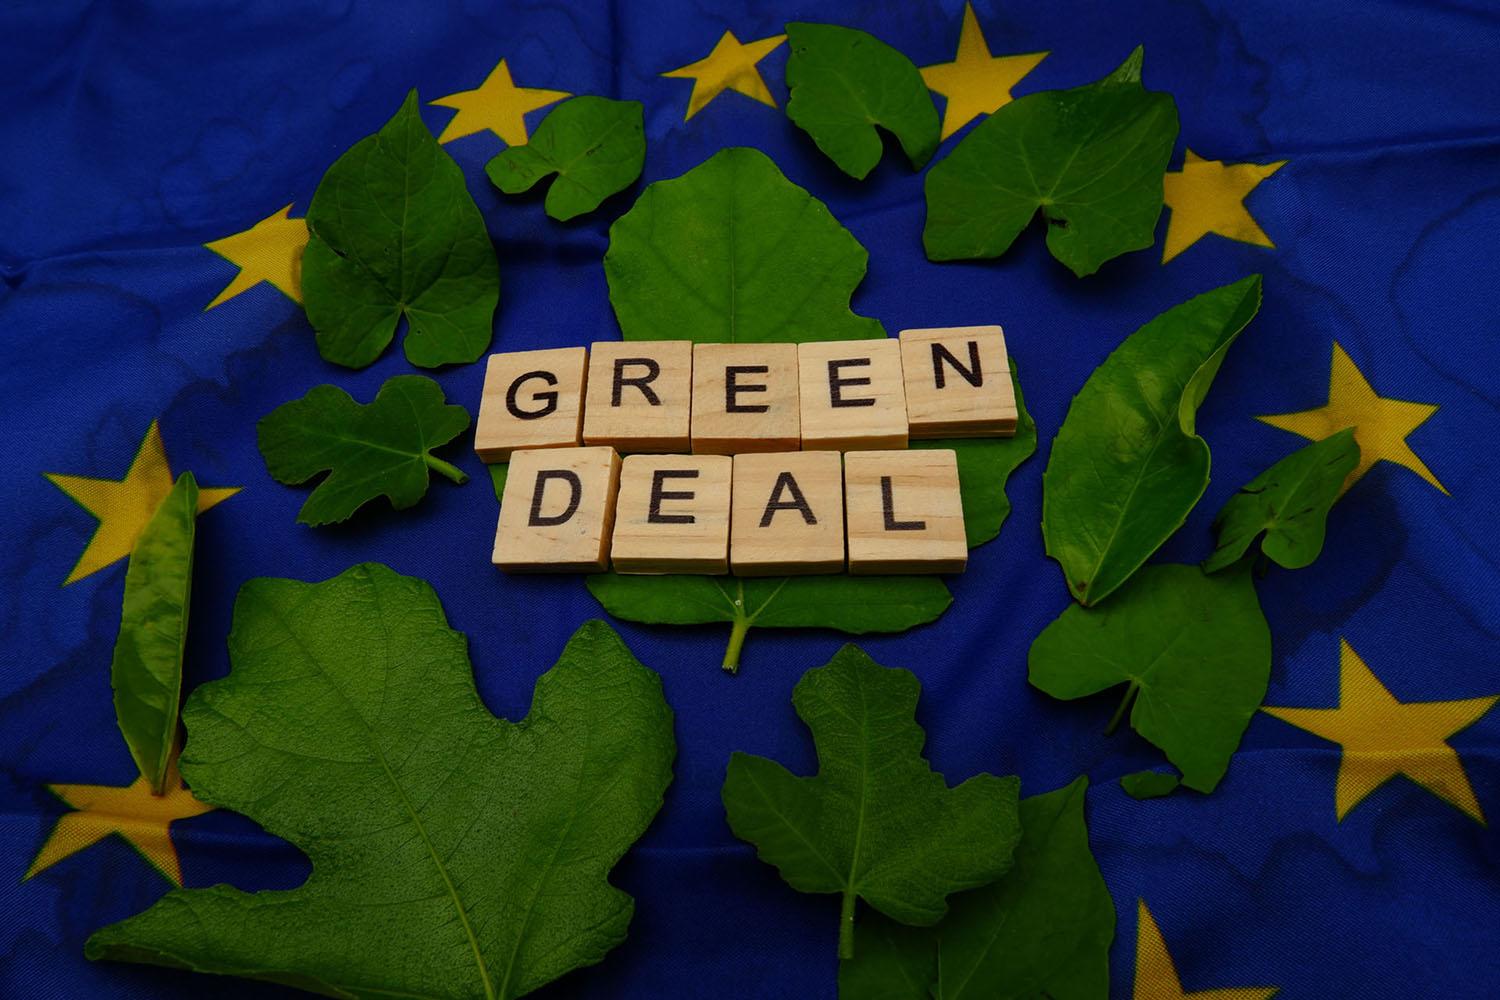 Europos Parlamentas brėžia žalią kryptį: laimėsime visi /